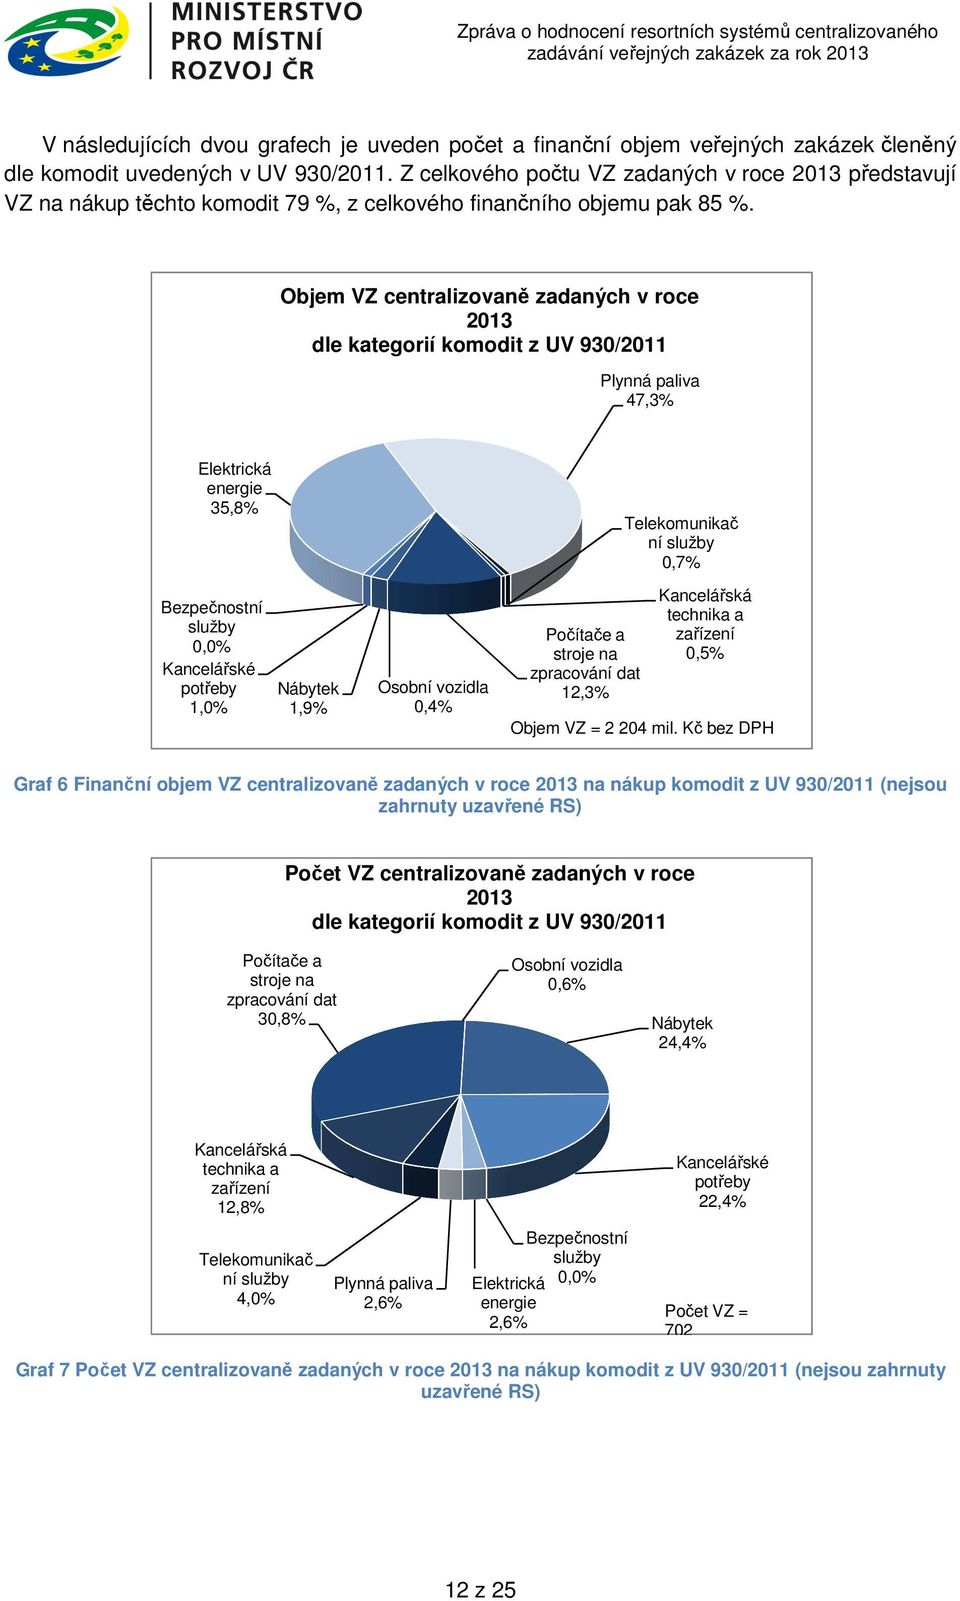 Objem VZ centralizovaně zadaných v roce 2013 dle kategorií komodit z UV 930/2011 Plynná paliva 47,3% Elektrická energie 35,8% Bezpečnostní služby 0,0% Kancelářské potřeby 1,0% Nábytek 1,9% Osobní